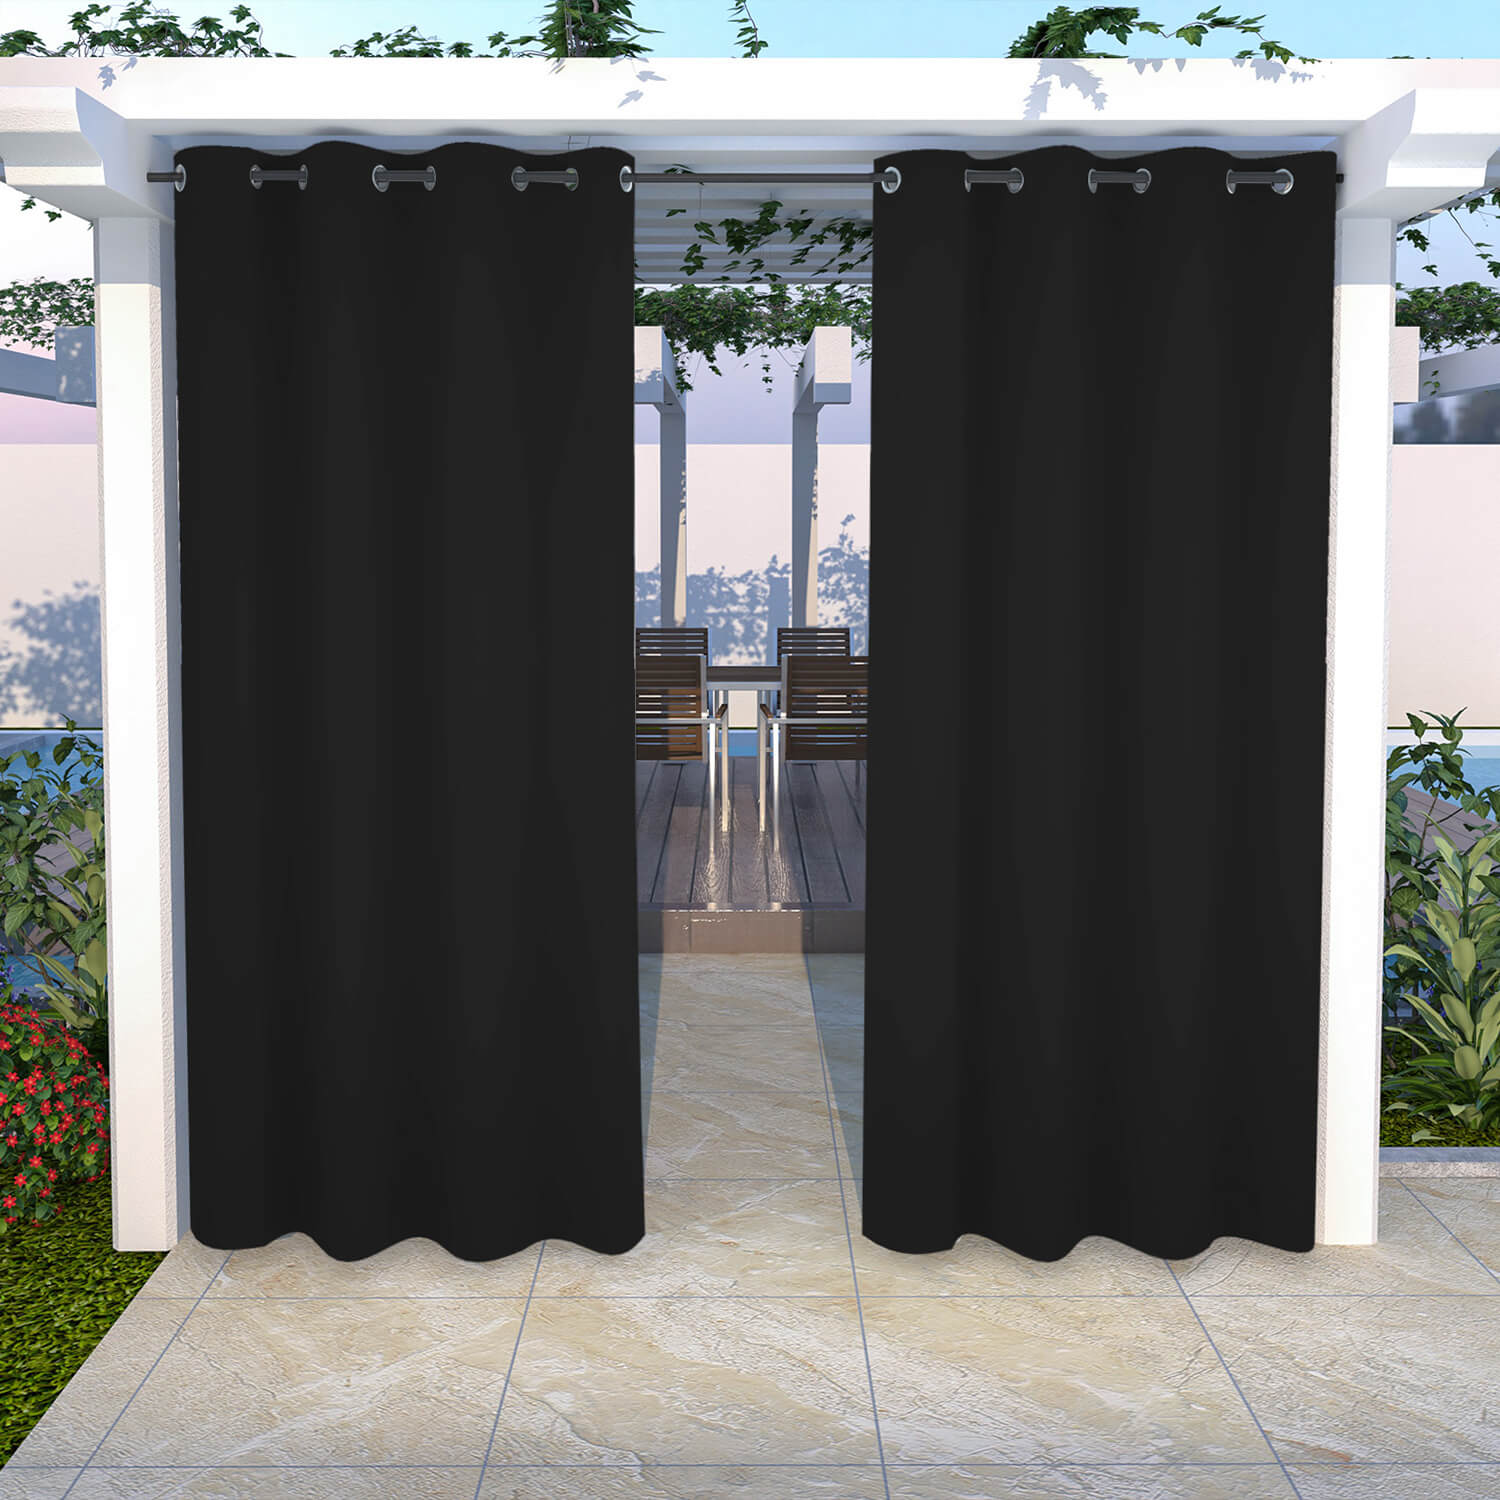 Snowcity Outdoor Curtains Waterproof Grommet Top 1 Panel - Raven Black